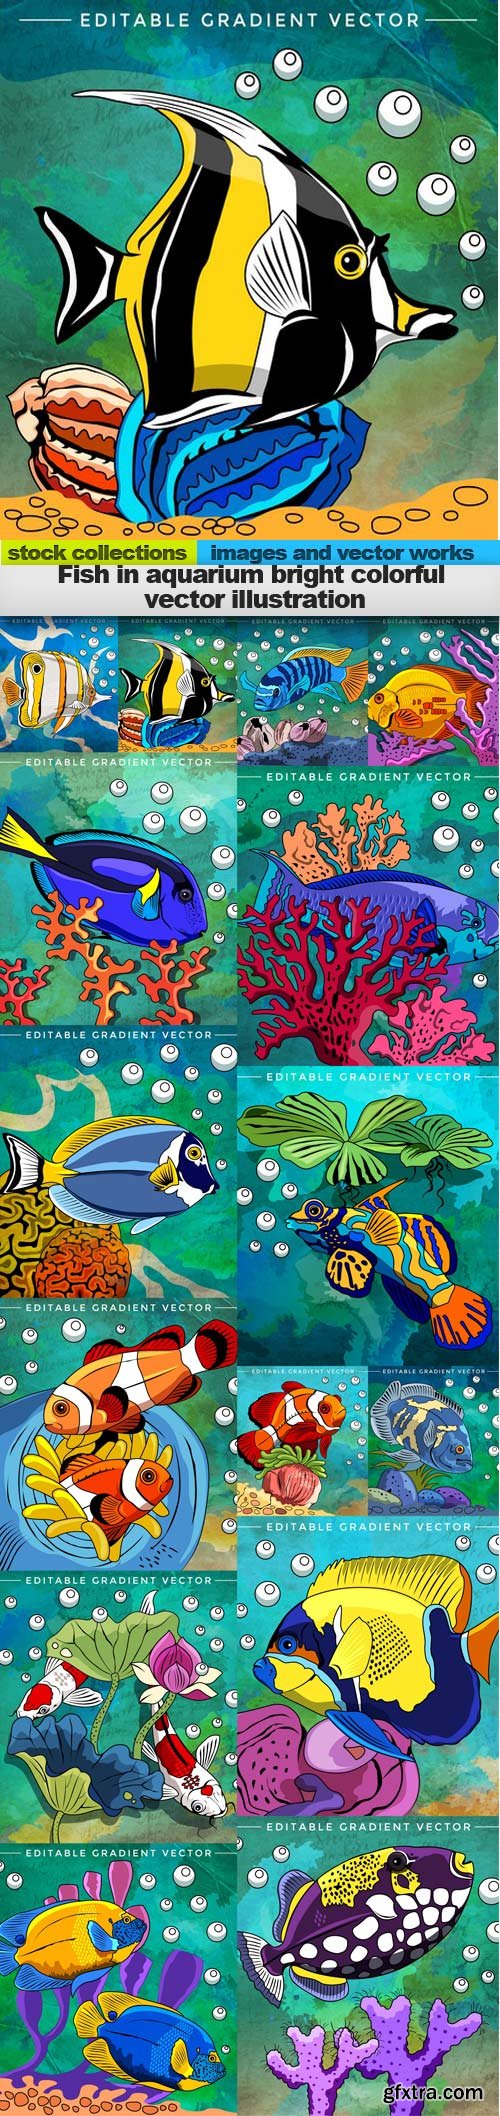 Fish in aquarium bright colorful vector illustration, 15 x EPS